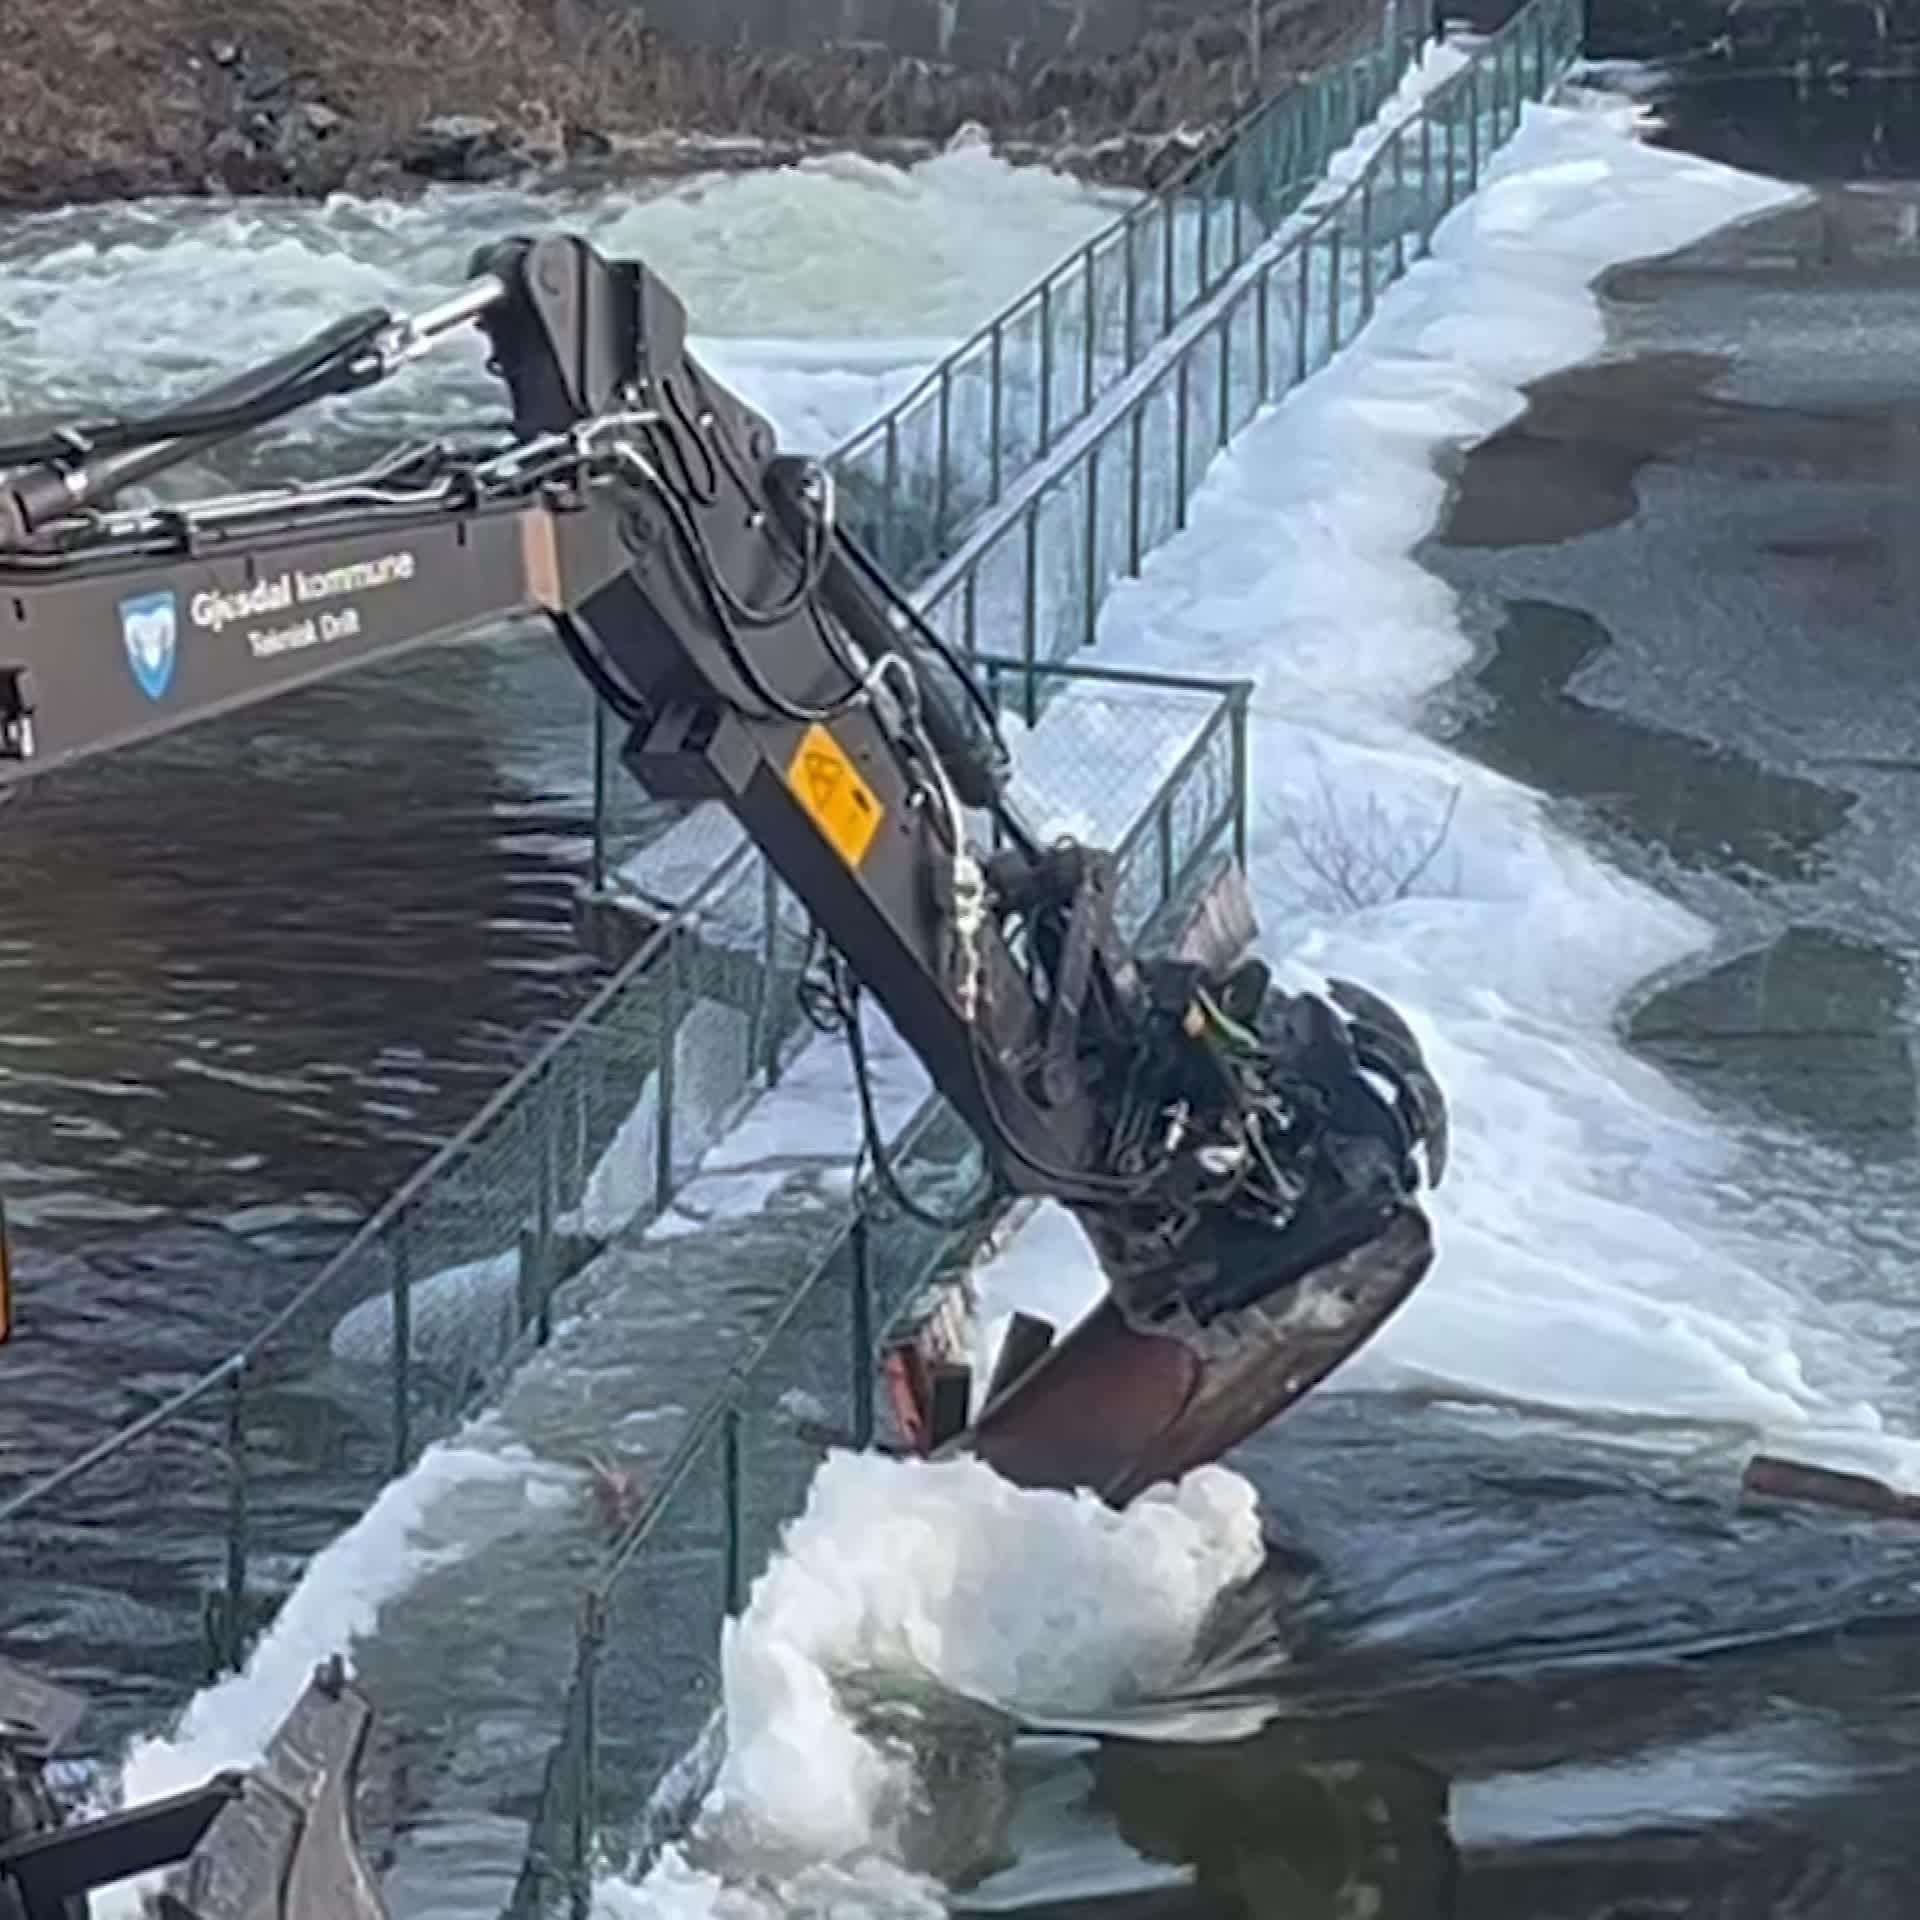 Kongeparken Dam Frozen: Excavator Working to Prevent Overflow